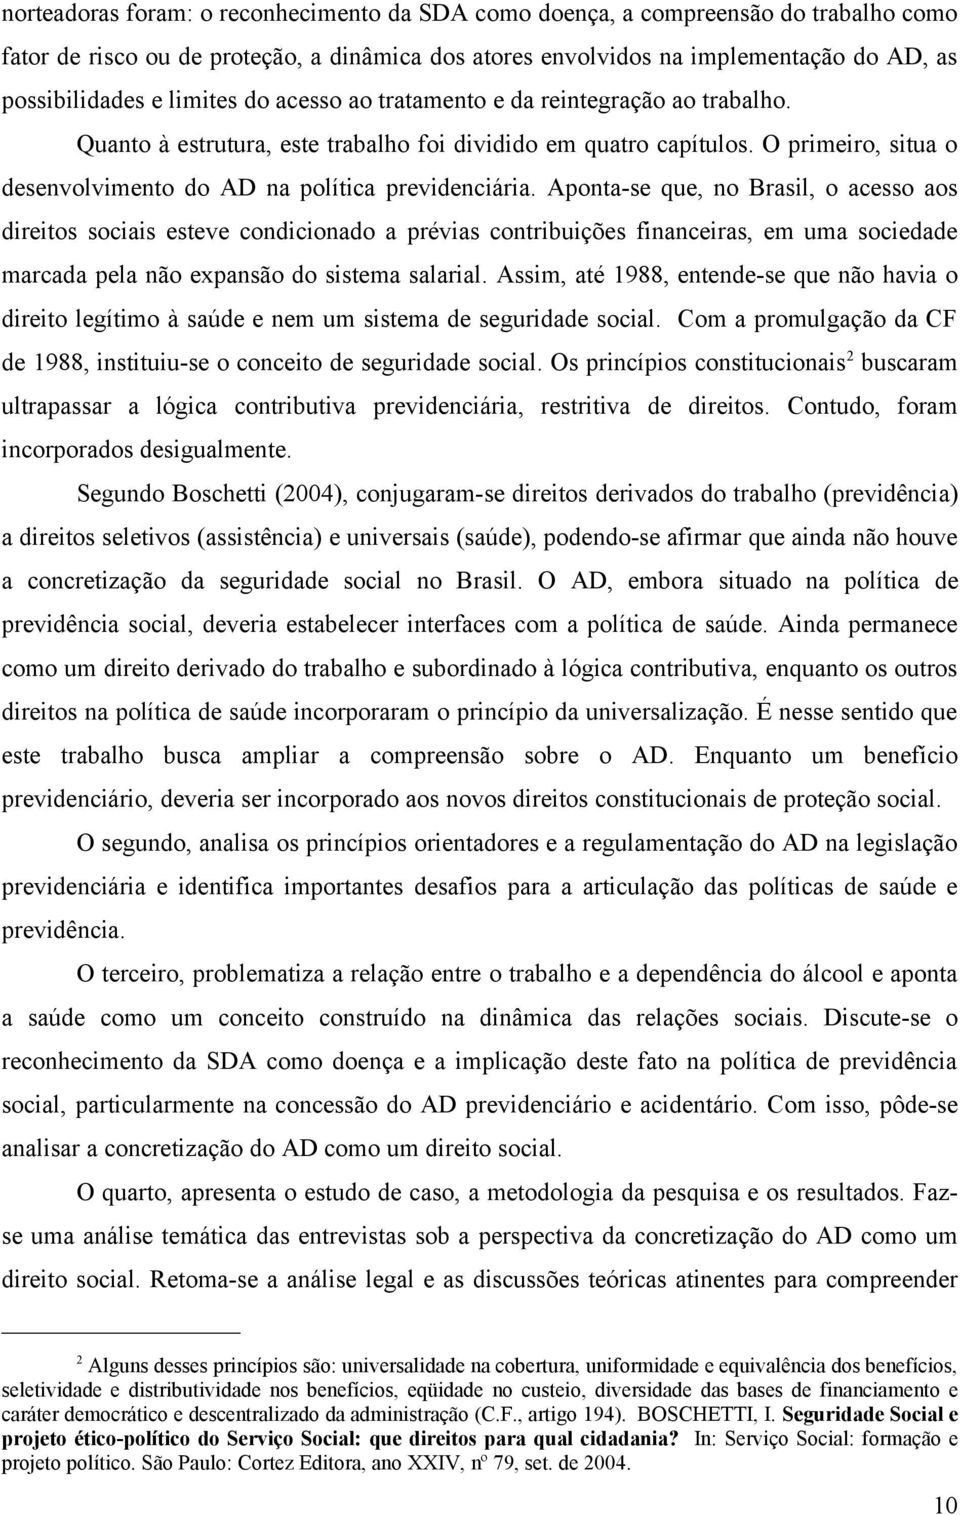 Aponta-se que, no Brasil, o acesso aos direitos sociais esteve condicionado a prévias contribuições financeiras, em uma sociedade marcada pela não expansão do sistema salarial.